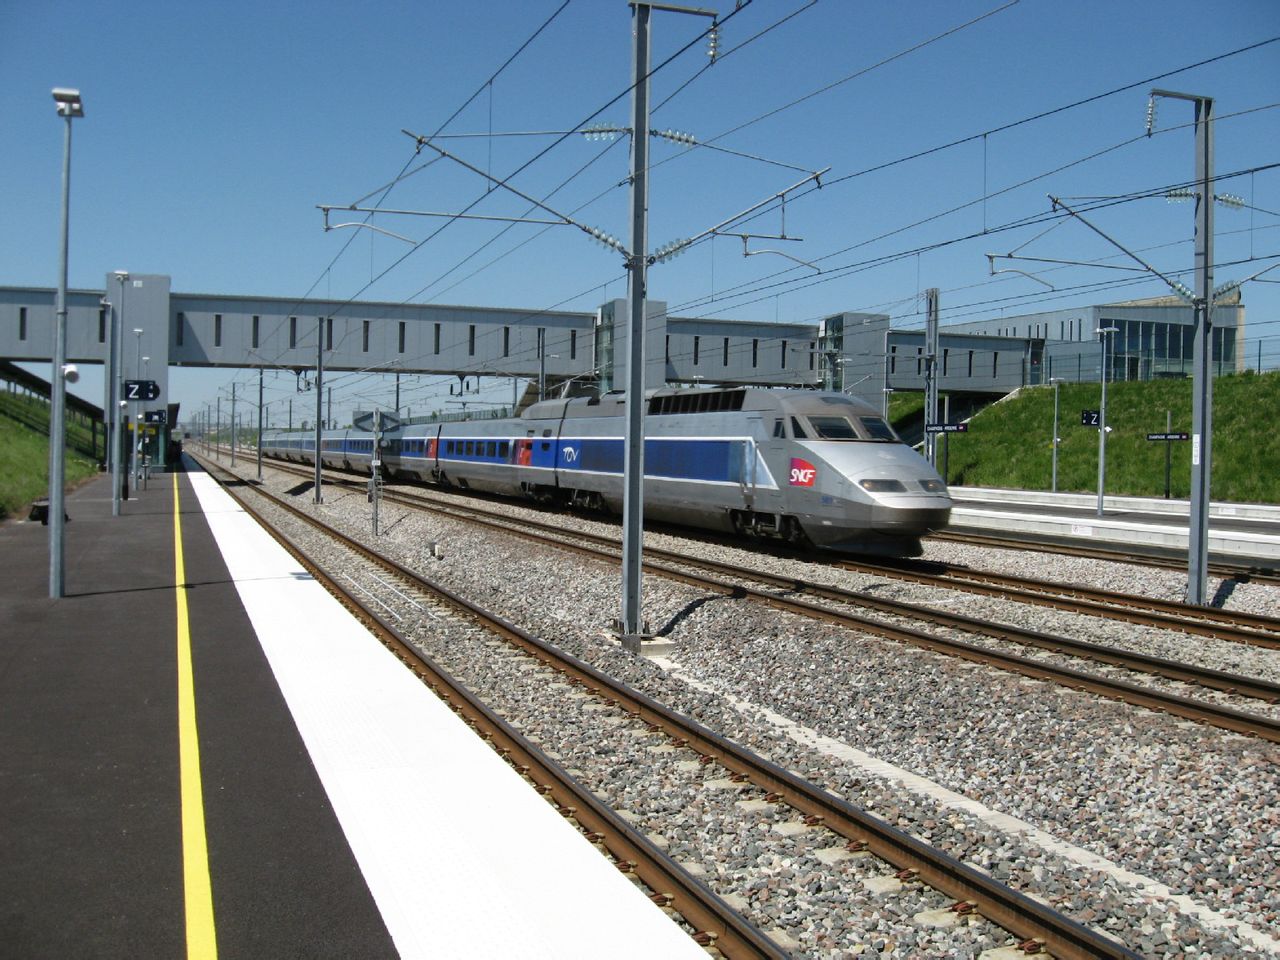 香檳-阿登TGV站附近（感謝原圖作者）